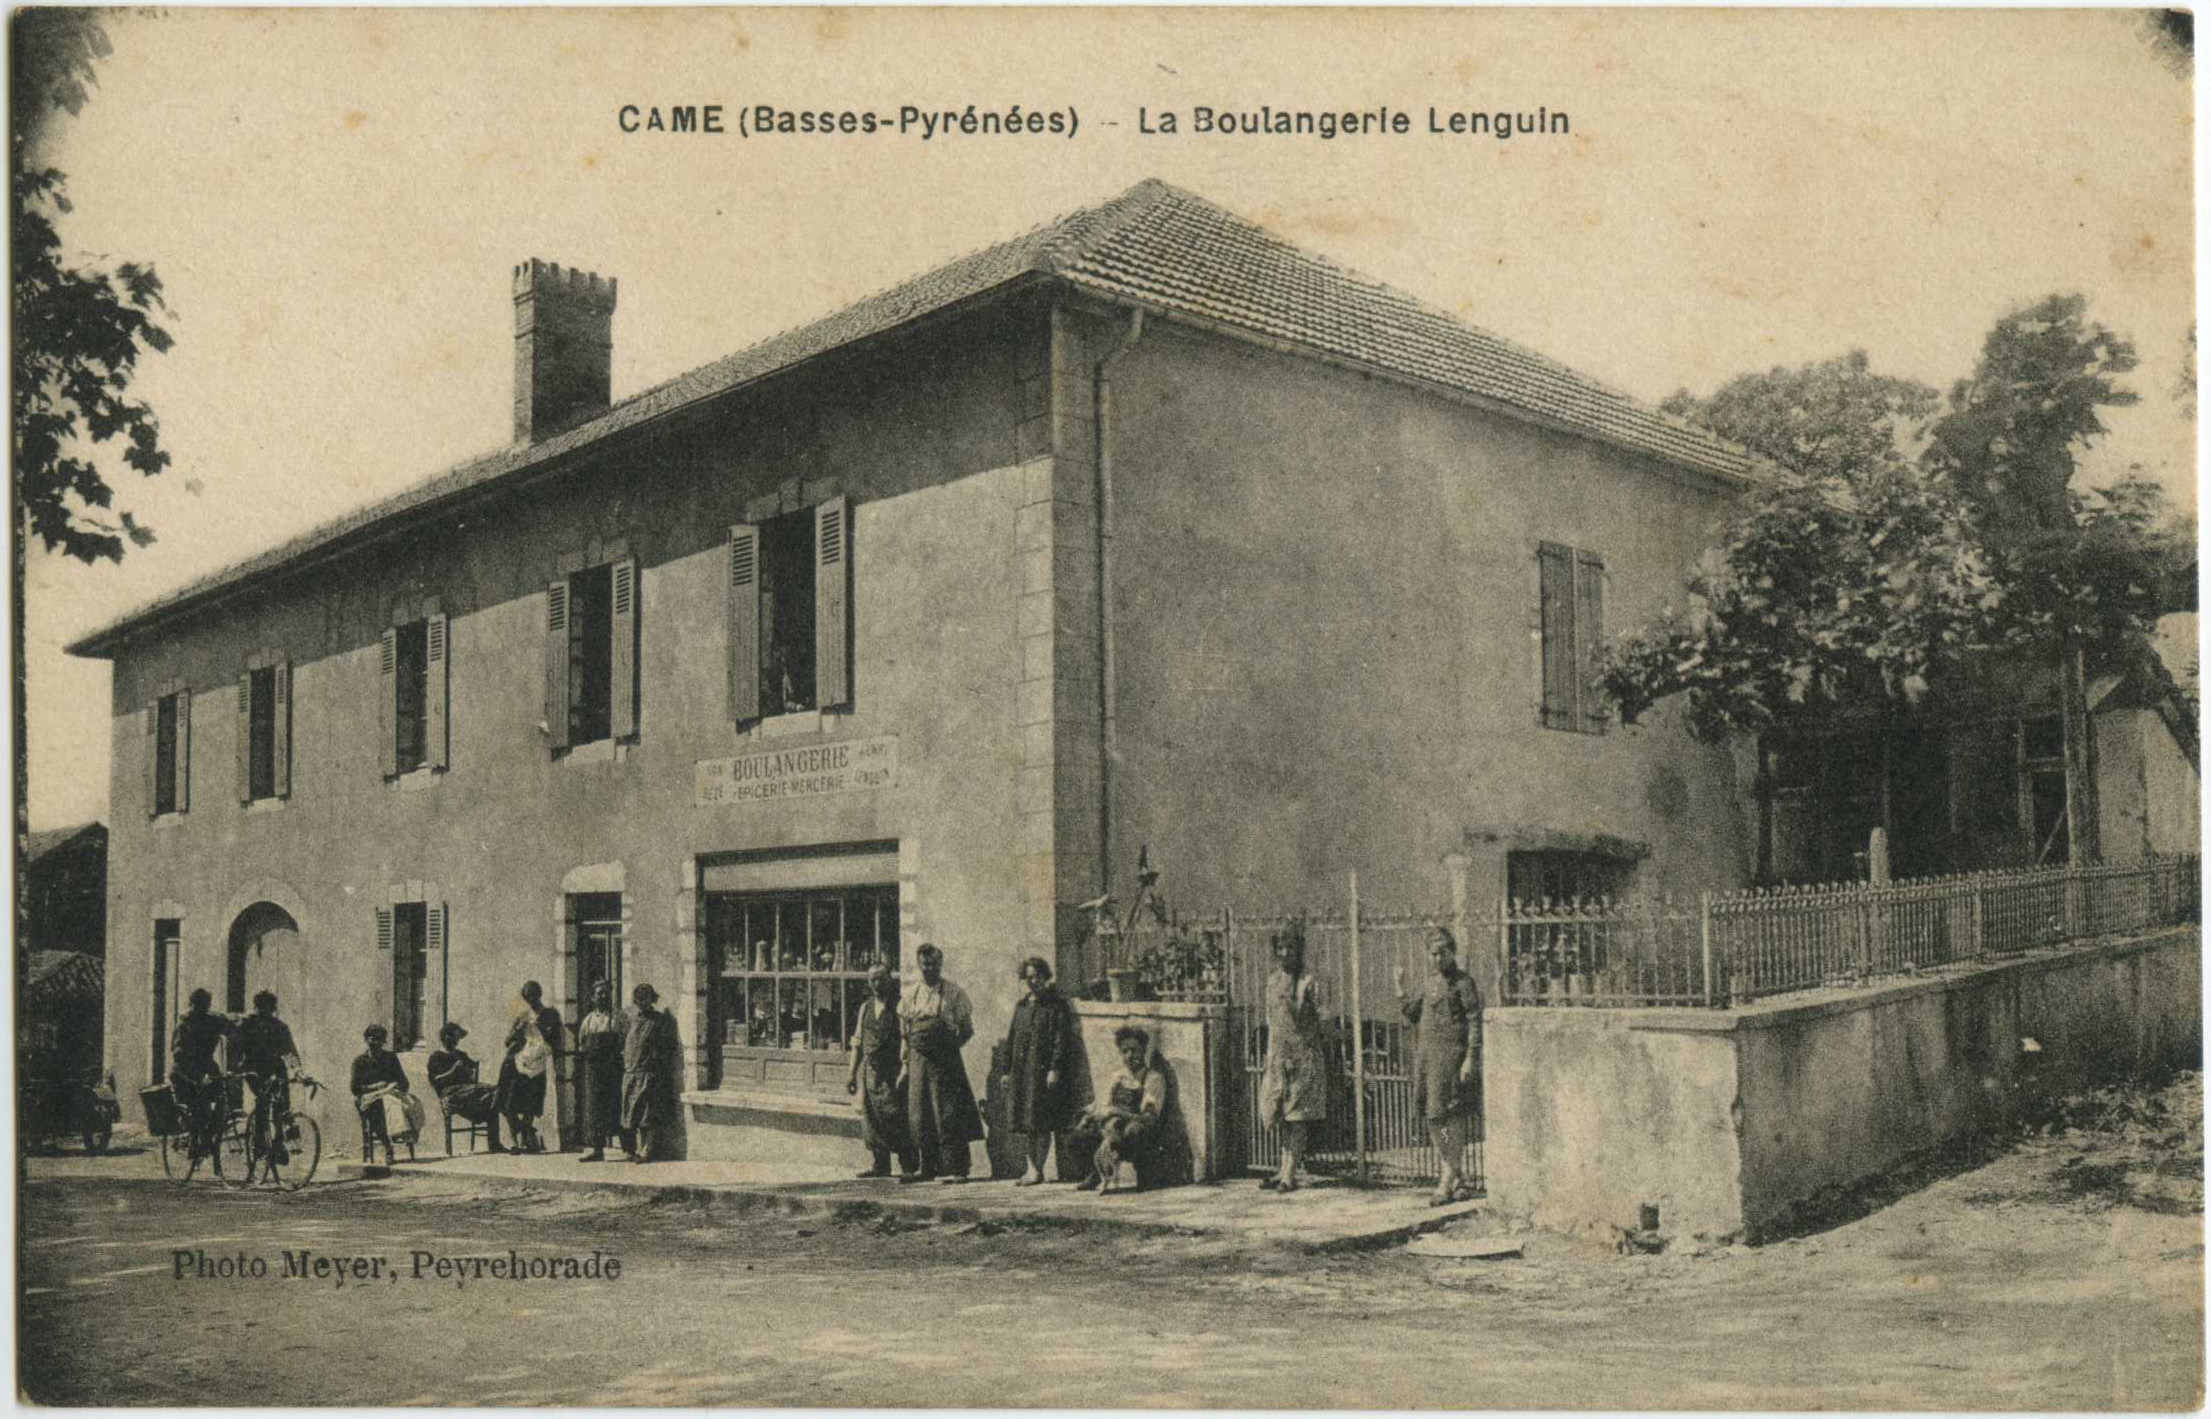 Came - La Boulangerie Lenguin